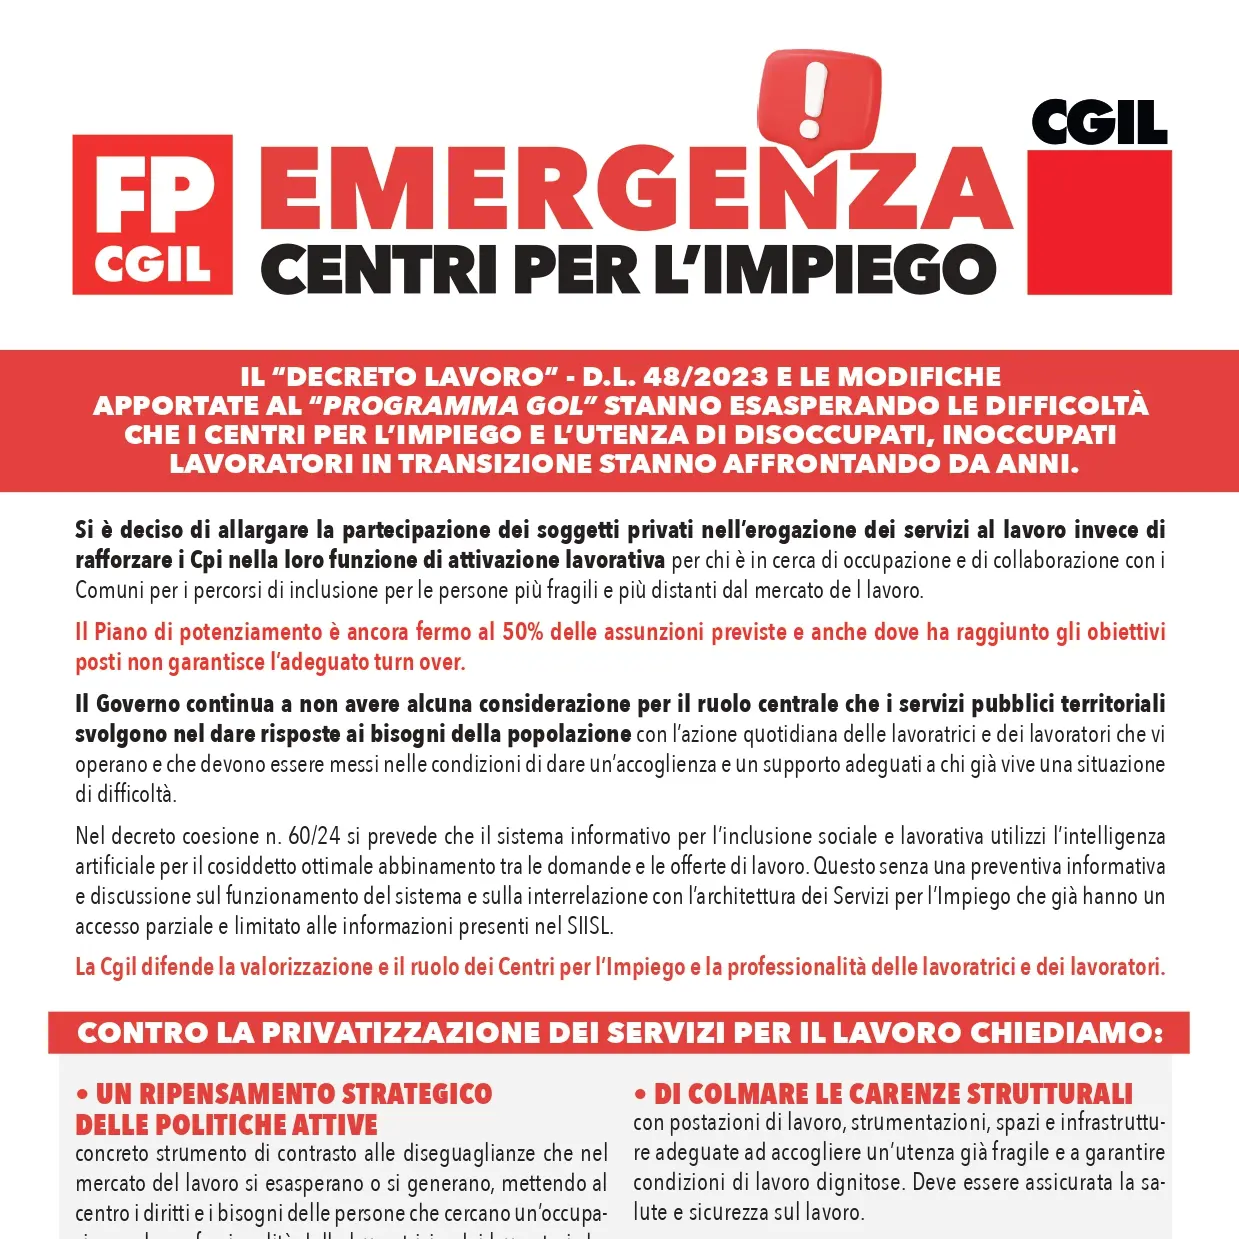 Cgil e Fp, emergenza centri per l’impiego!